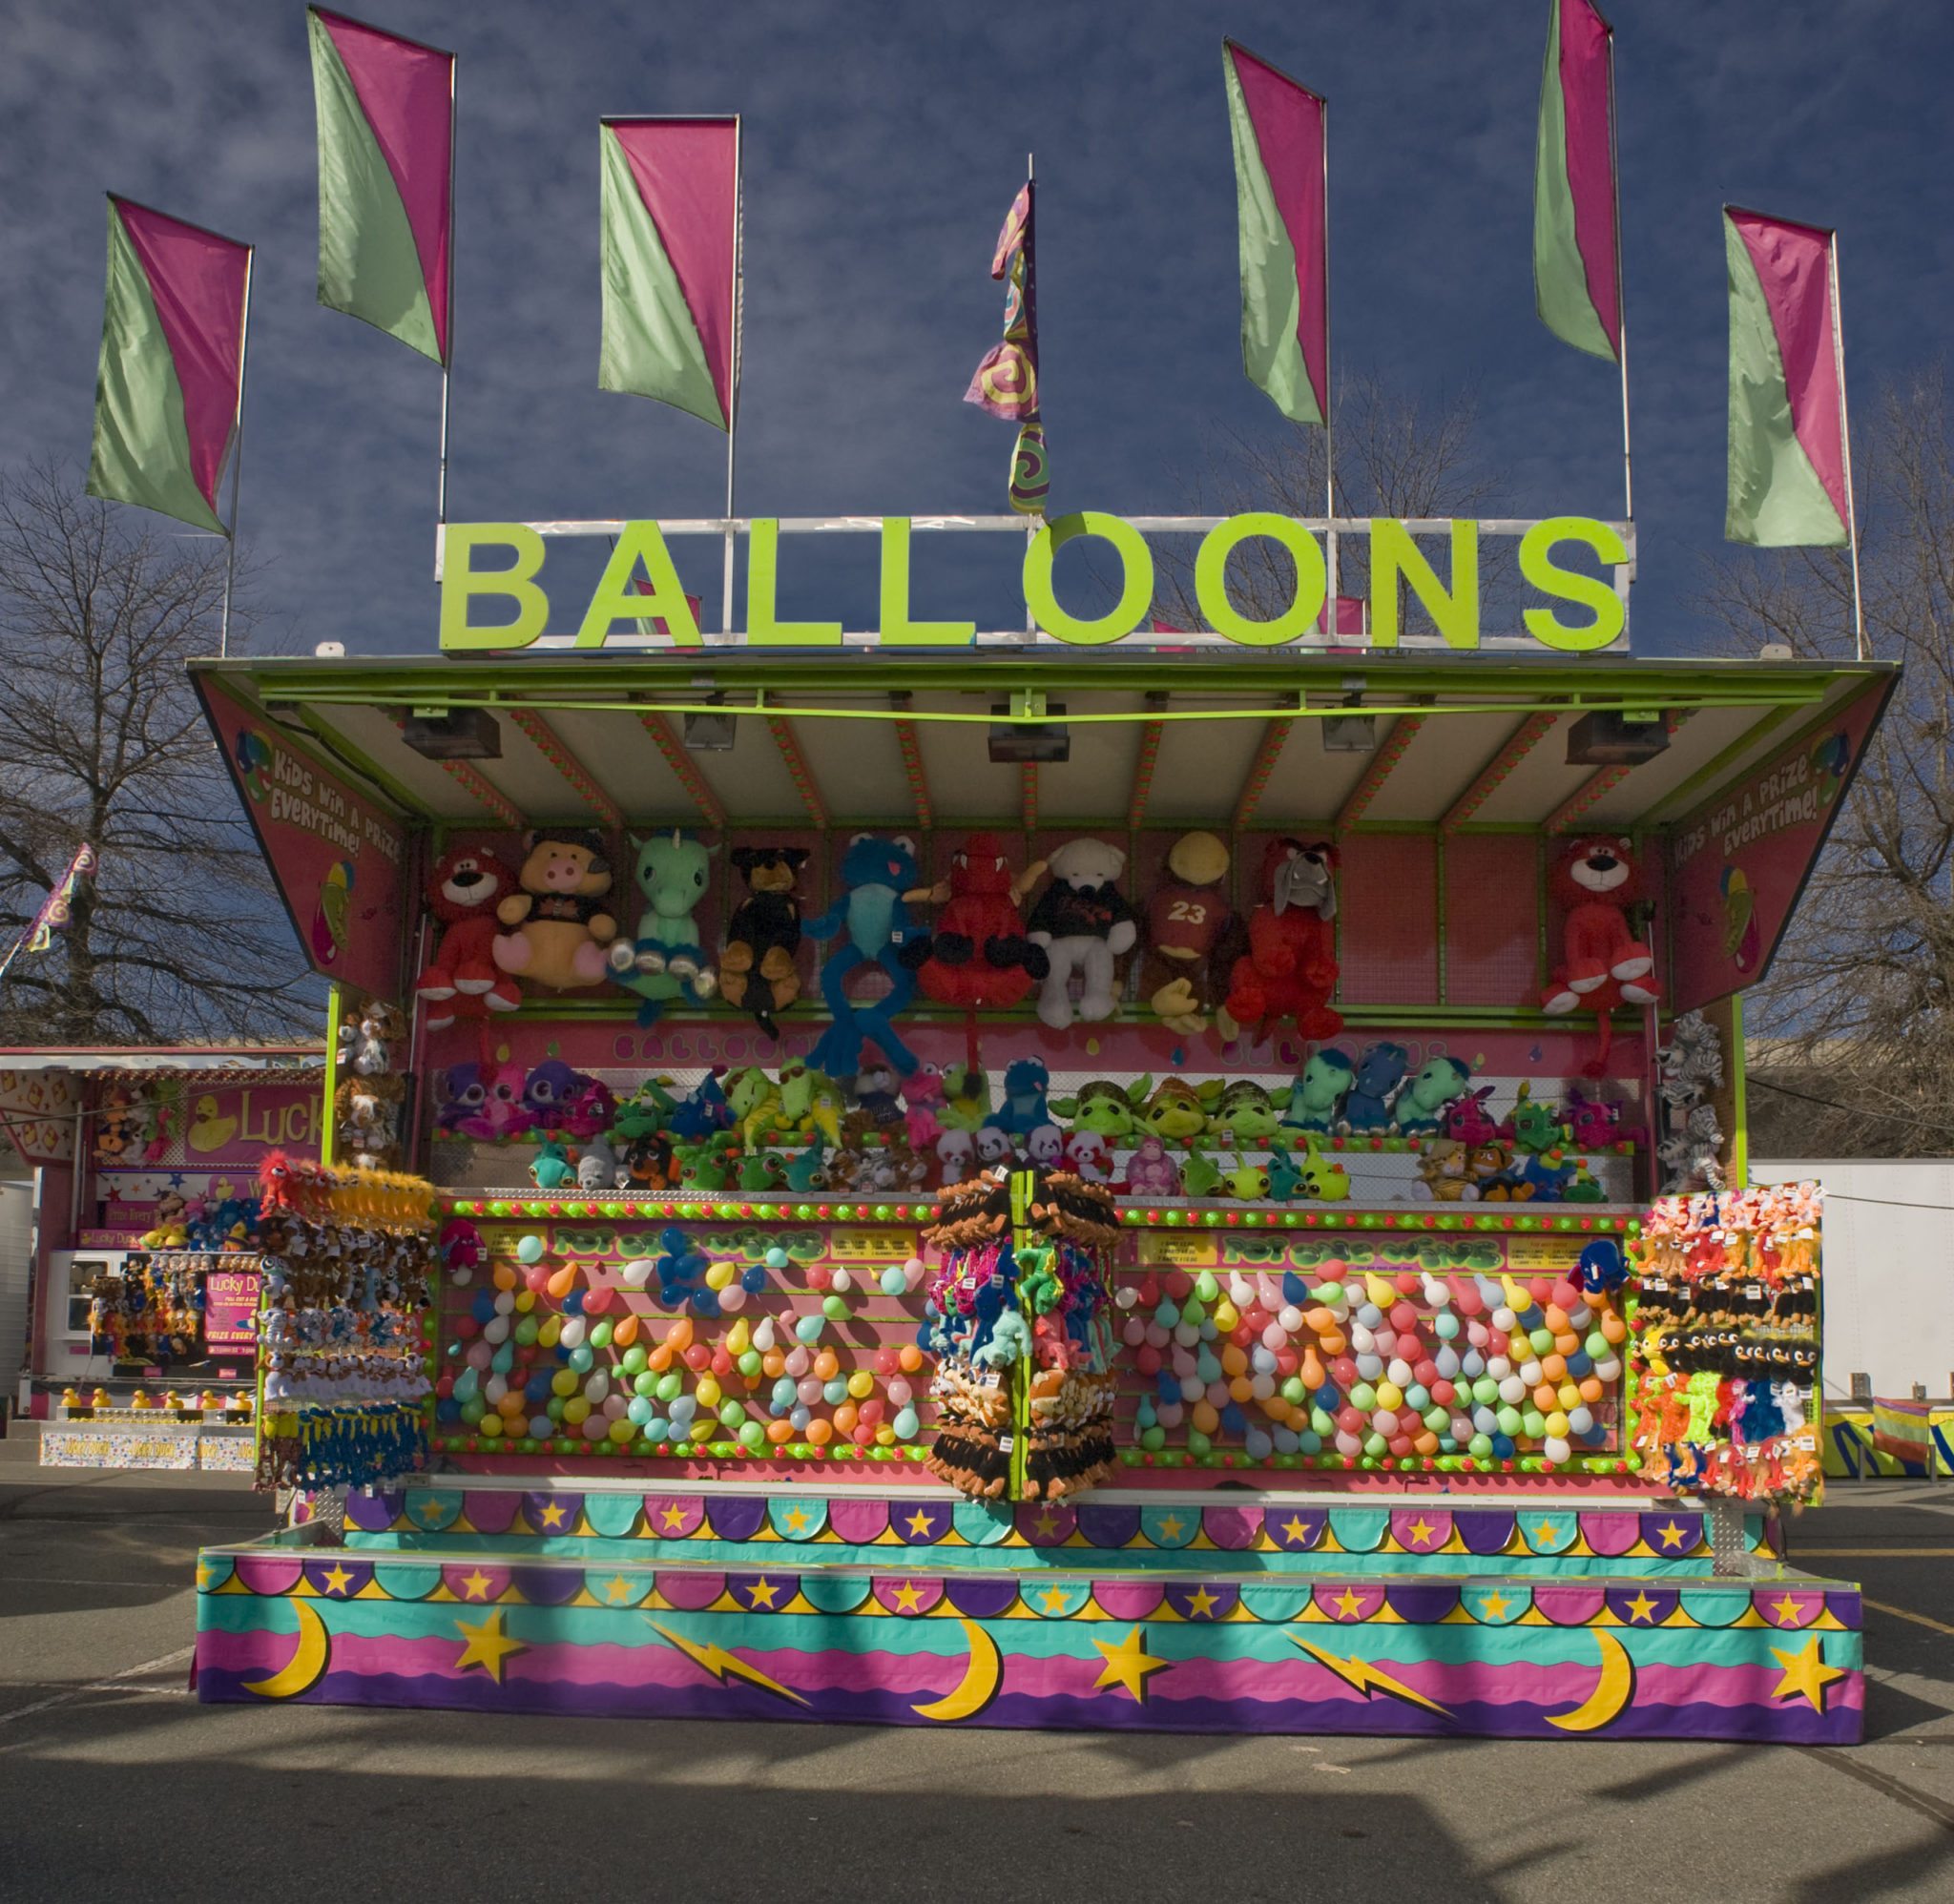 Des drapeaux flottent au-dessus d’un stand coloré de jeu de ballons à crever; des peluches sont suspendues au mur en haut des ballons et une toile aux couleurs pastels couvre le bas du stand